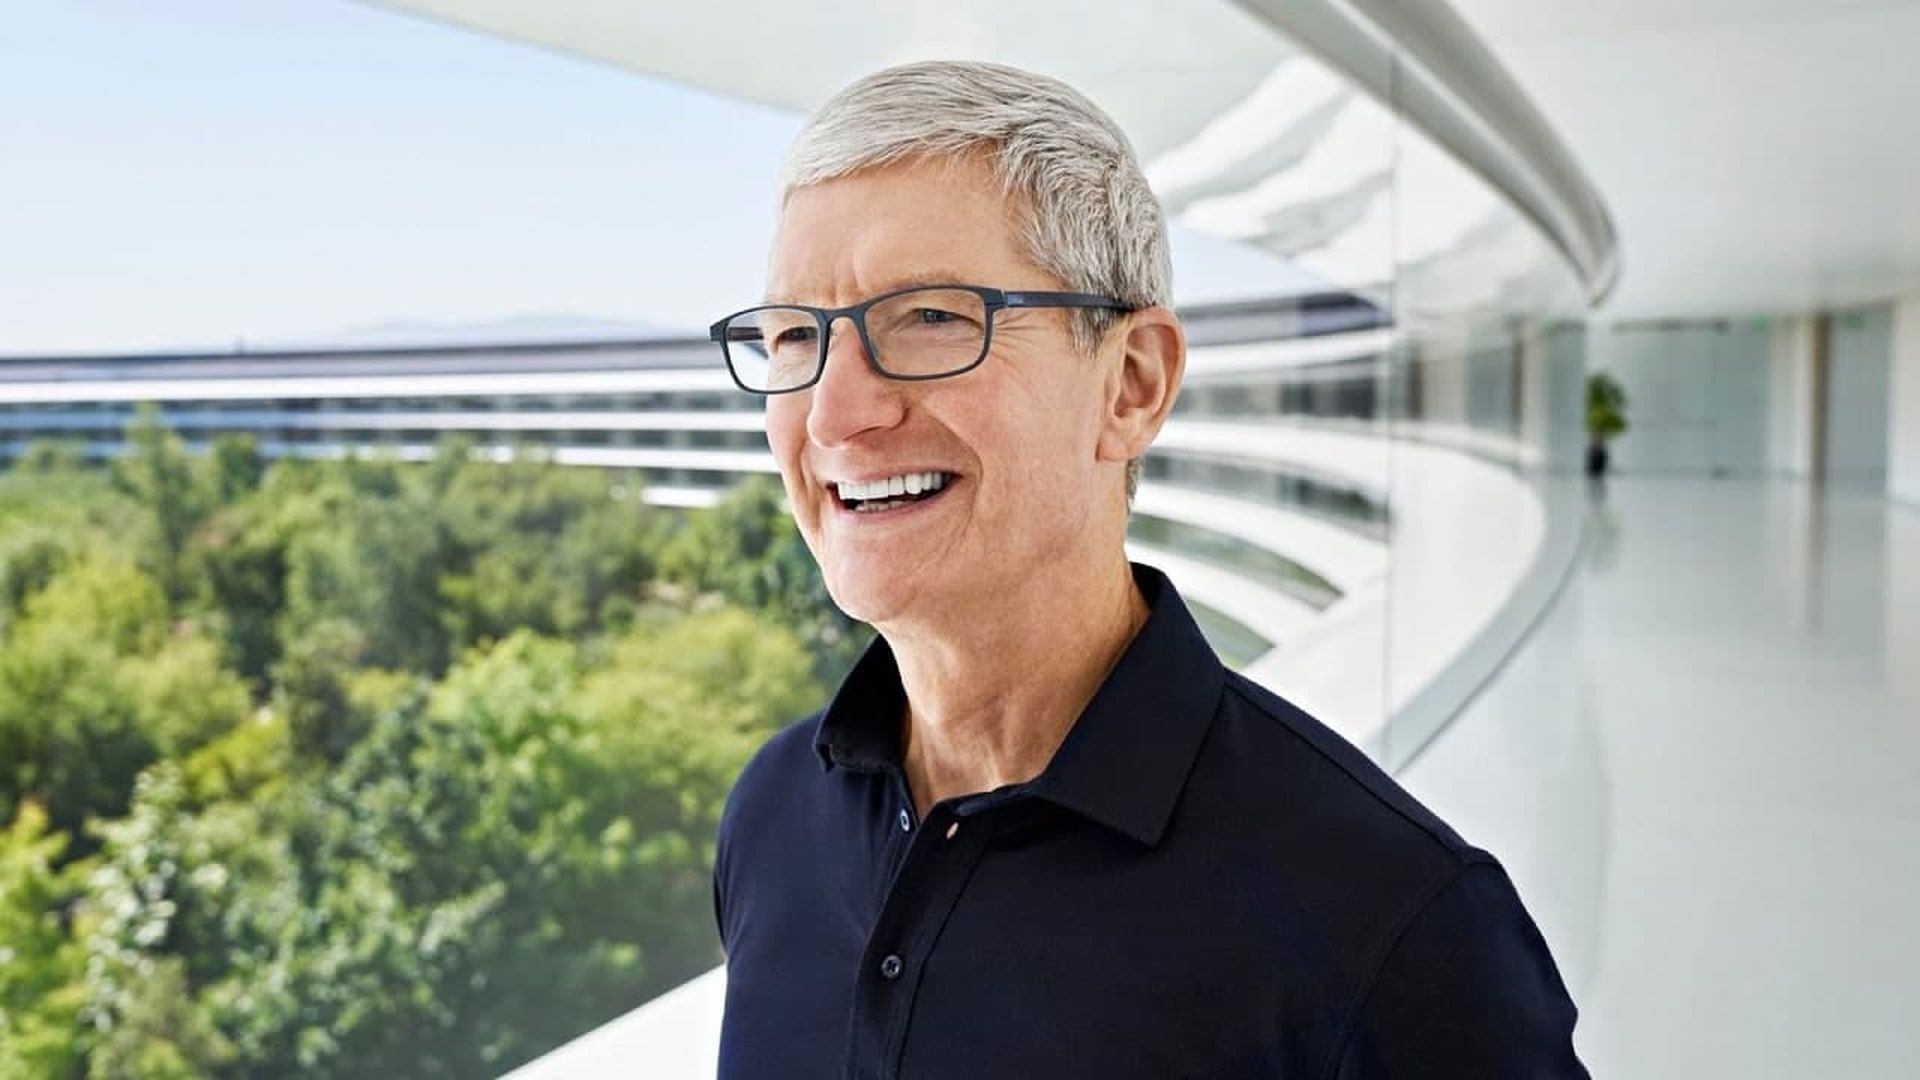 Тим Кук сообщил во время звонка Apple о доходах, что технический гигант не будет увольнять сотрудников, несмотря на слабые продажи новейшего iPhone и...